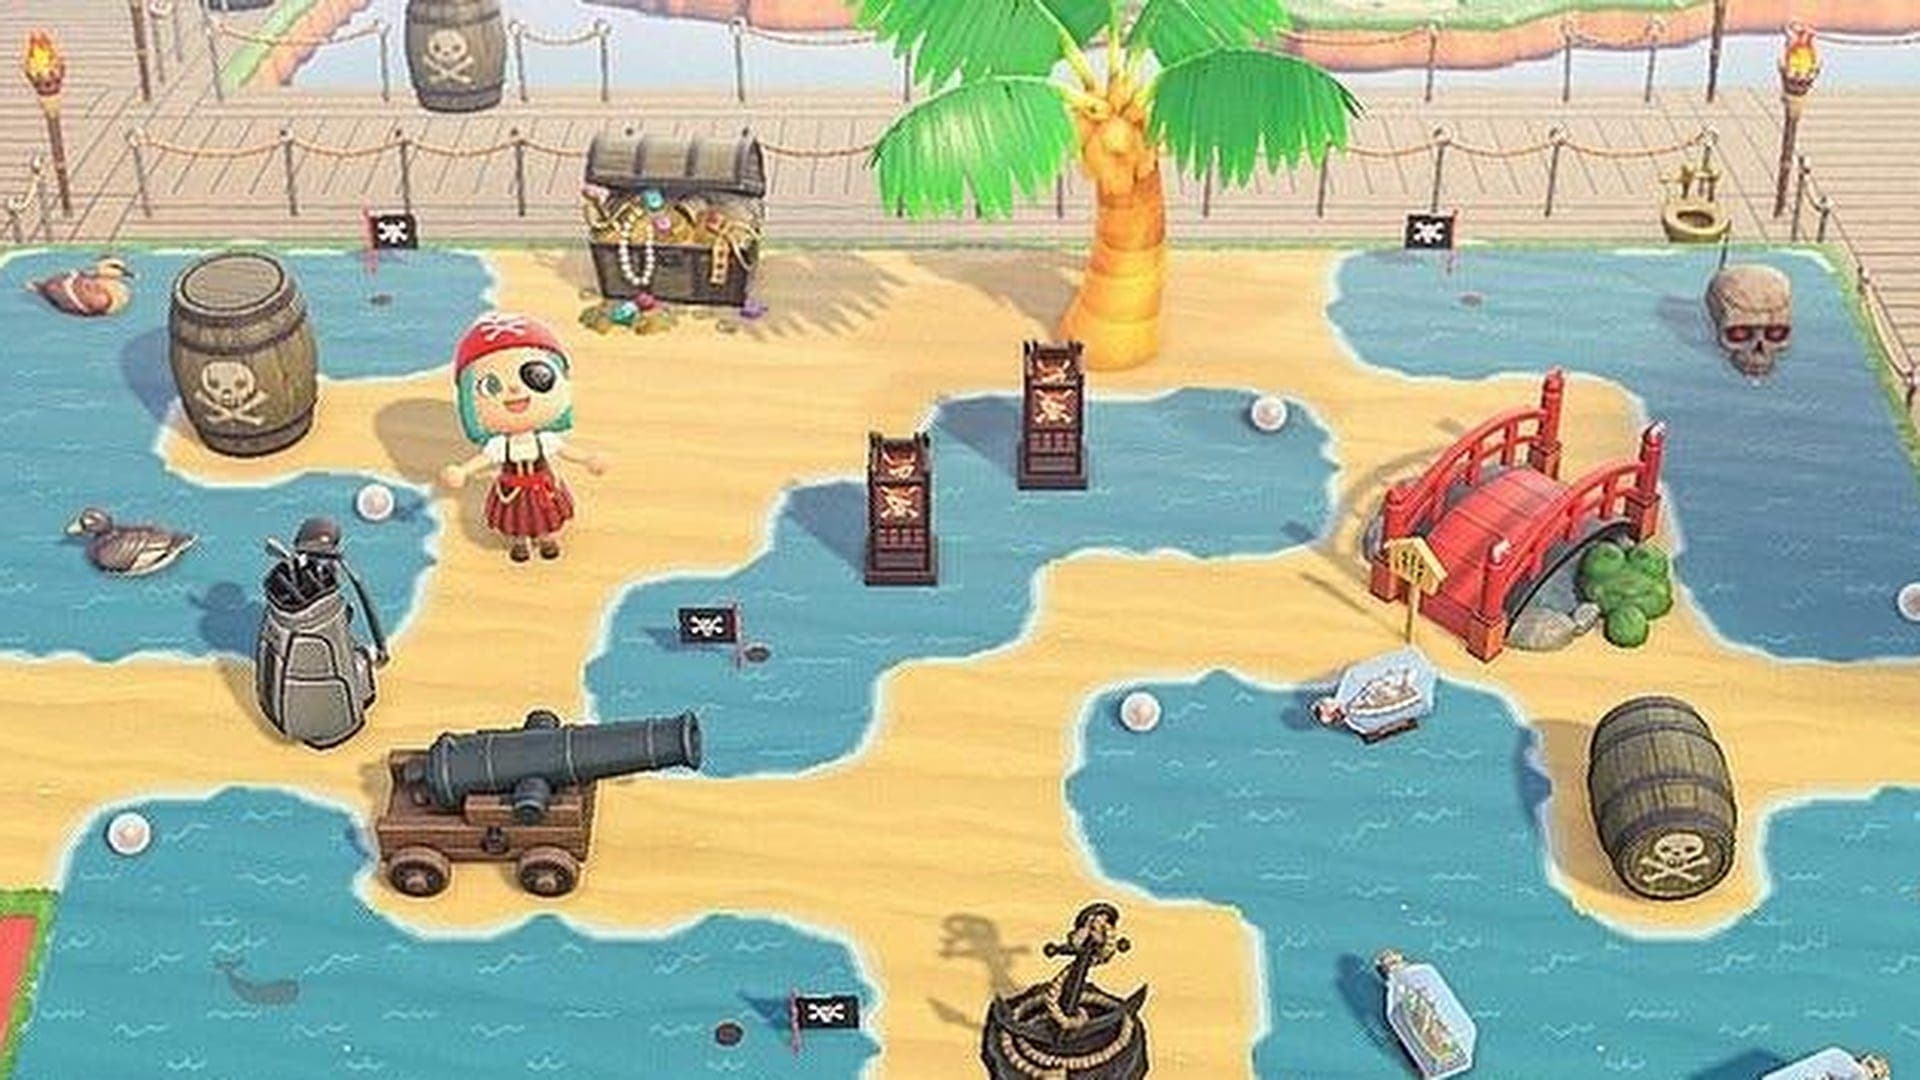 Crean esta original pista de golf con temática pirata en Animal Crossing: New Horizons: código de sueño y de diseños